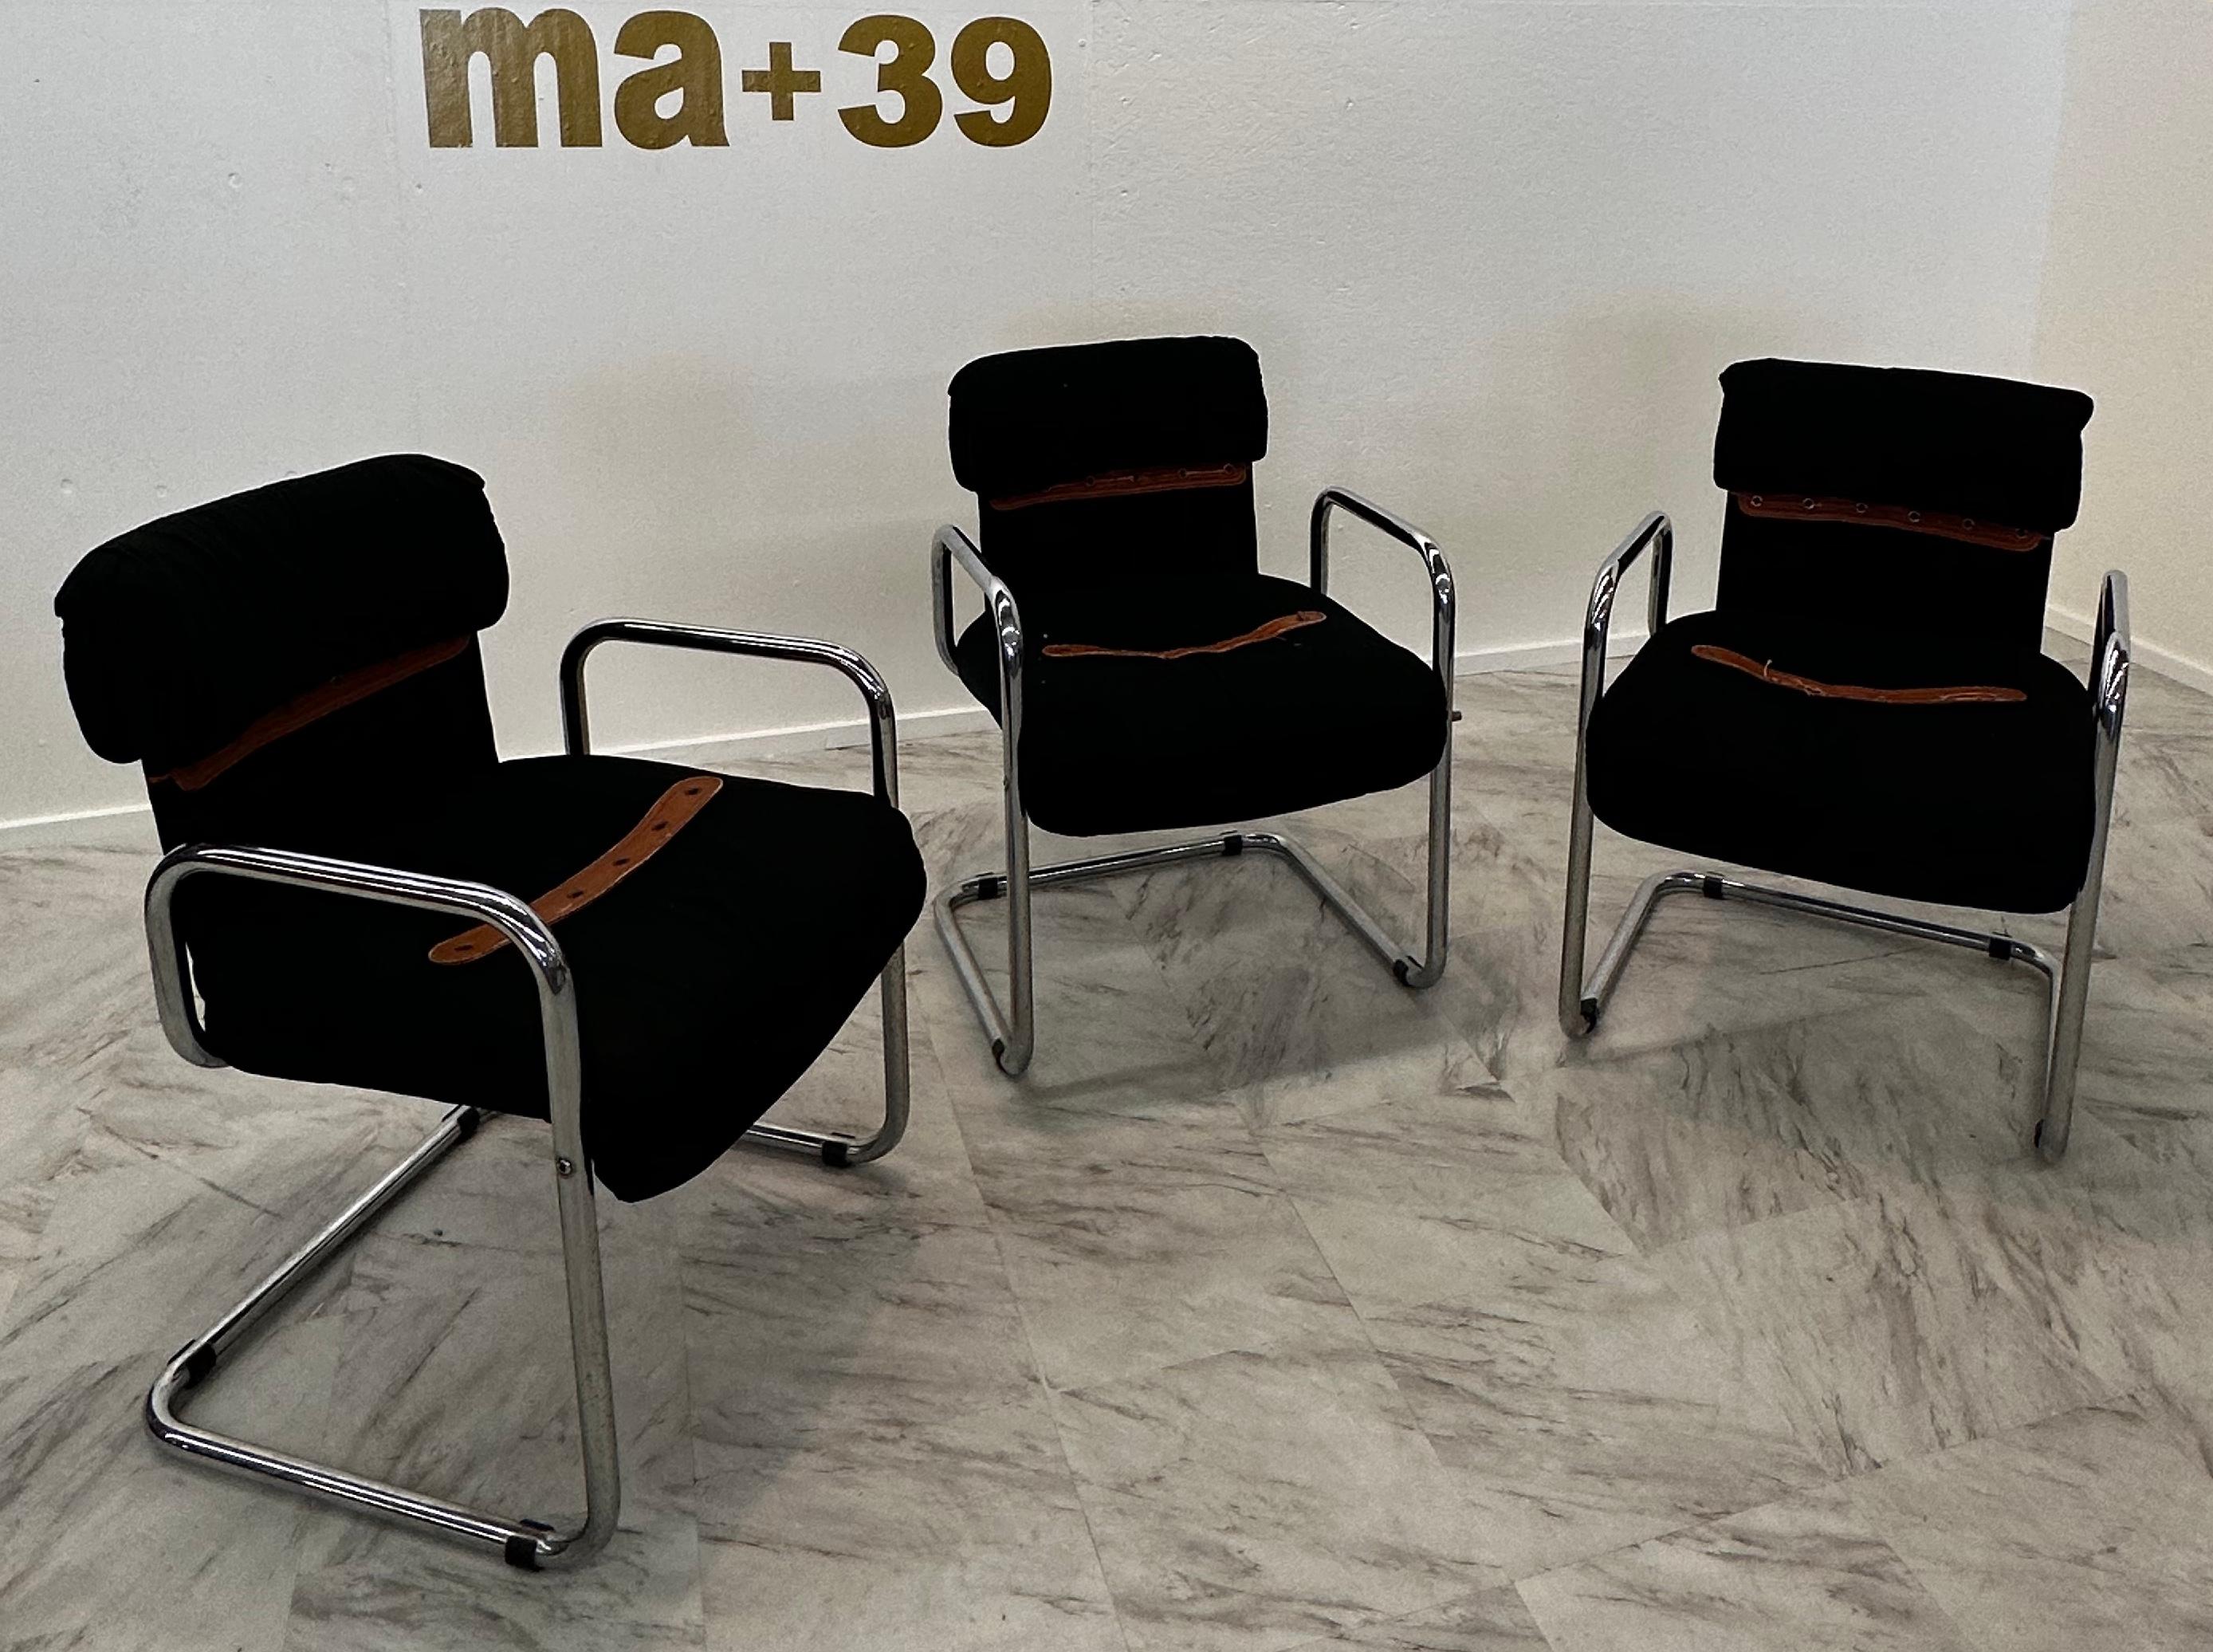 Cet ensemble comprend trois chaises de salle à manger exquises conçues par le célèbre designer italien Guido Faleschini dans les années 1980, en exclusivité pour Hermès. Les créations de Faleschini sont connues pour leur fusion de luxe, d'innovation